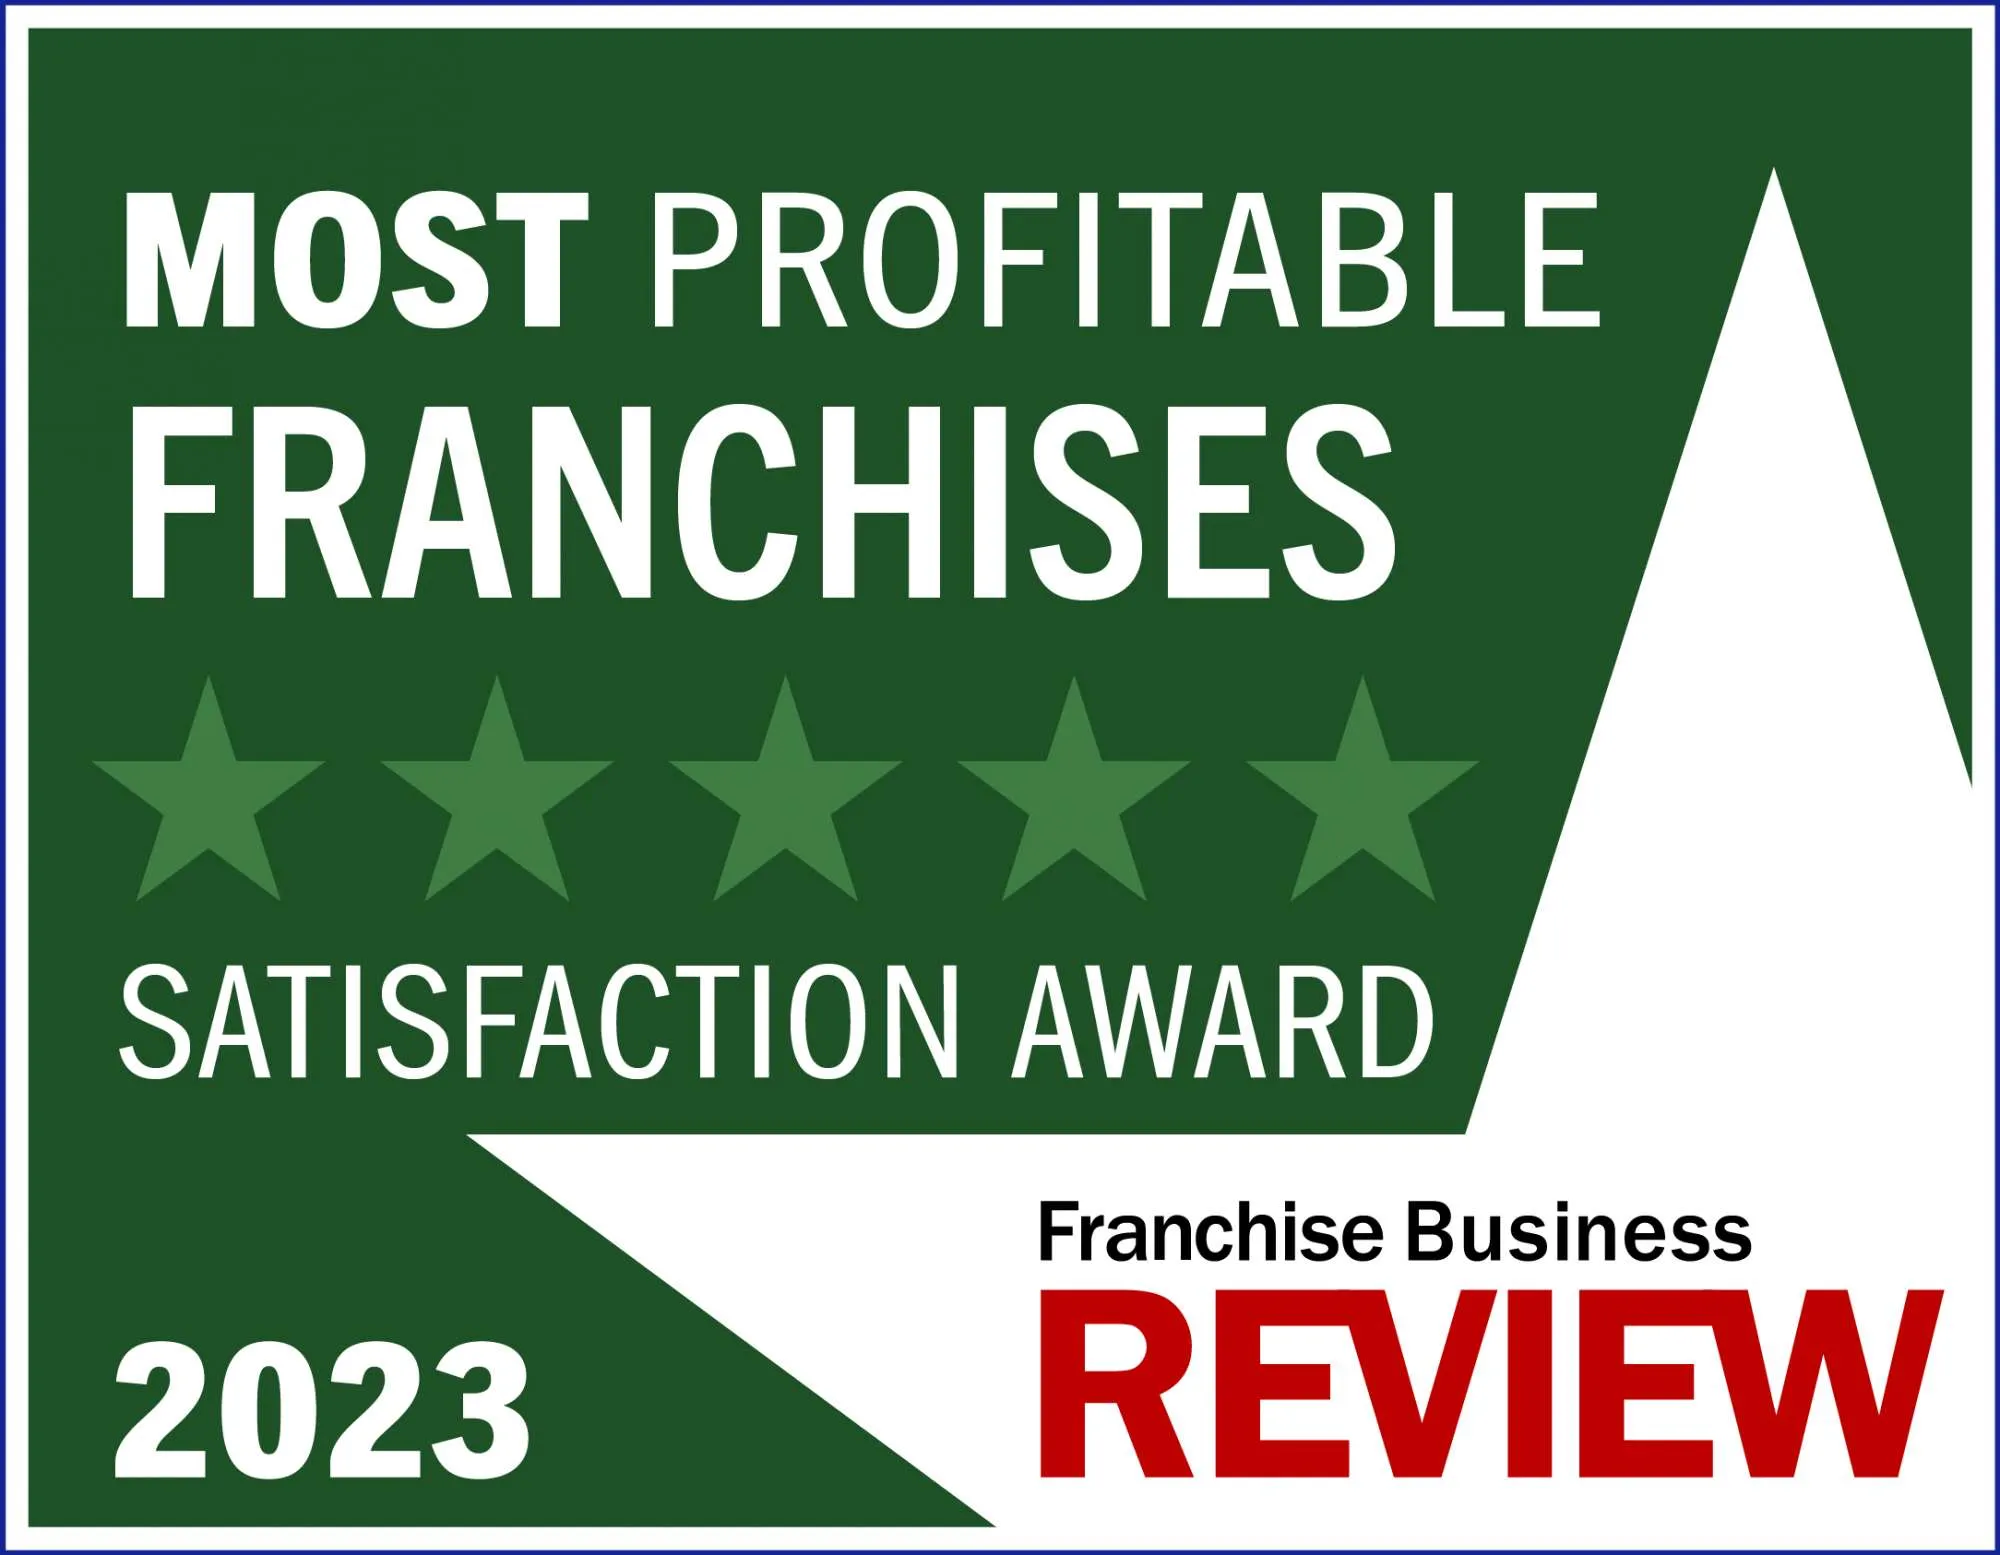 Franchise Business Review Most Profitable Franchises  - 2023